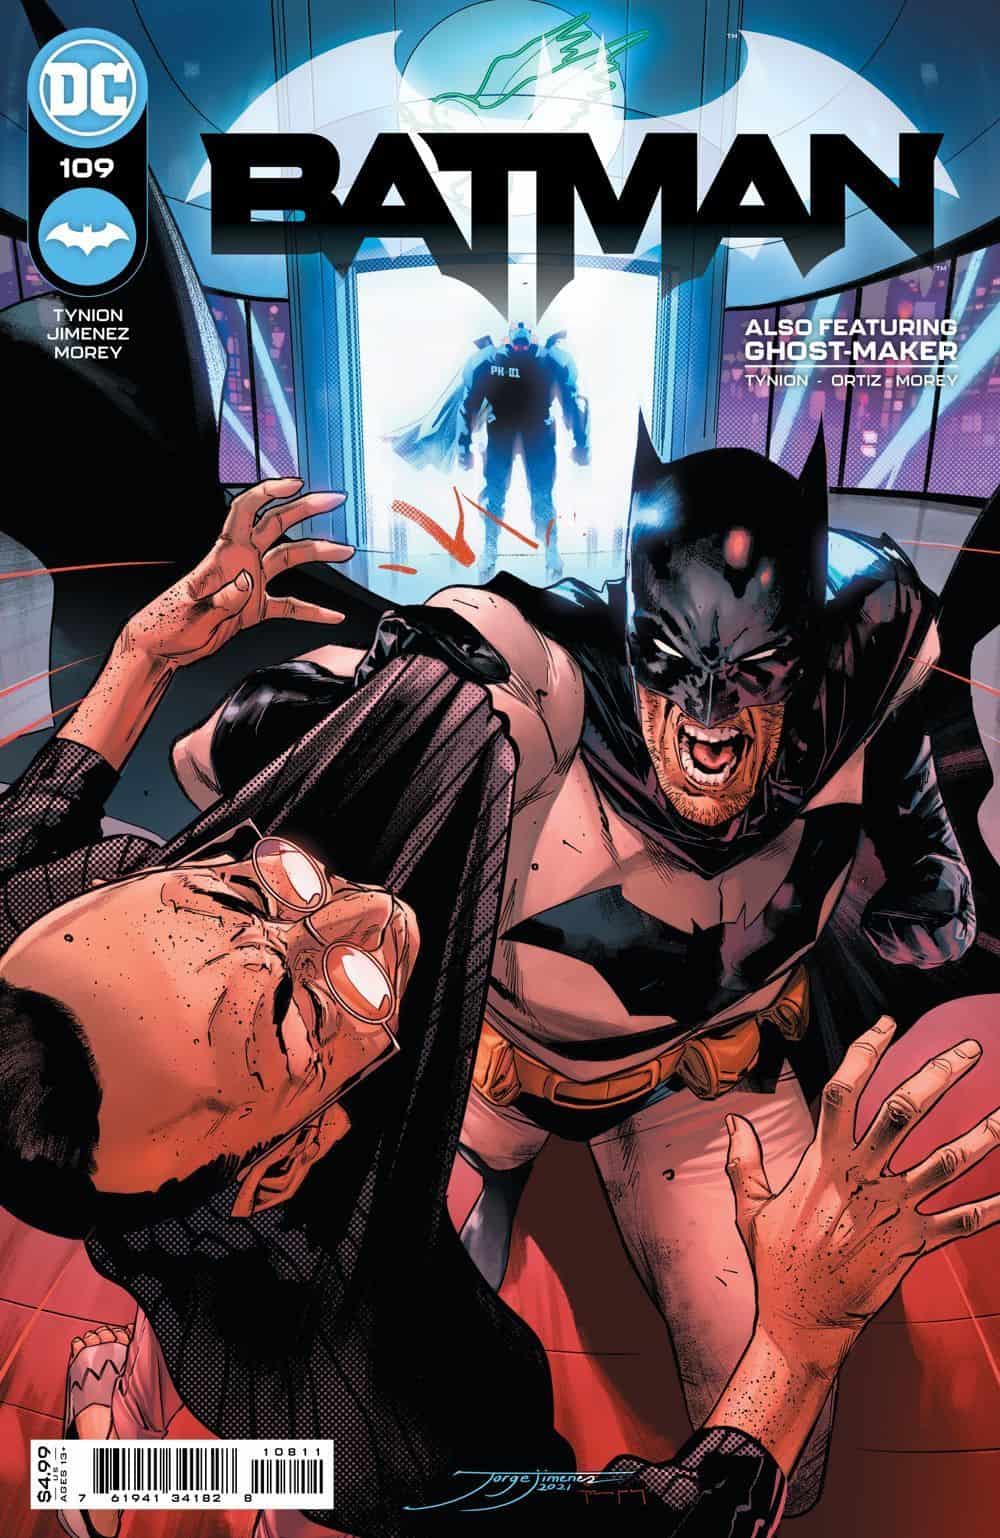 DC Comics & June 2021 Solicitations Spoilers: Is Batman A Better Super-Hero Or Detective? You Decide!